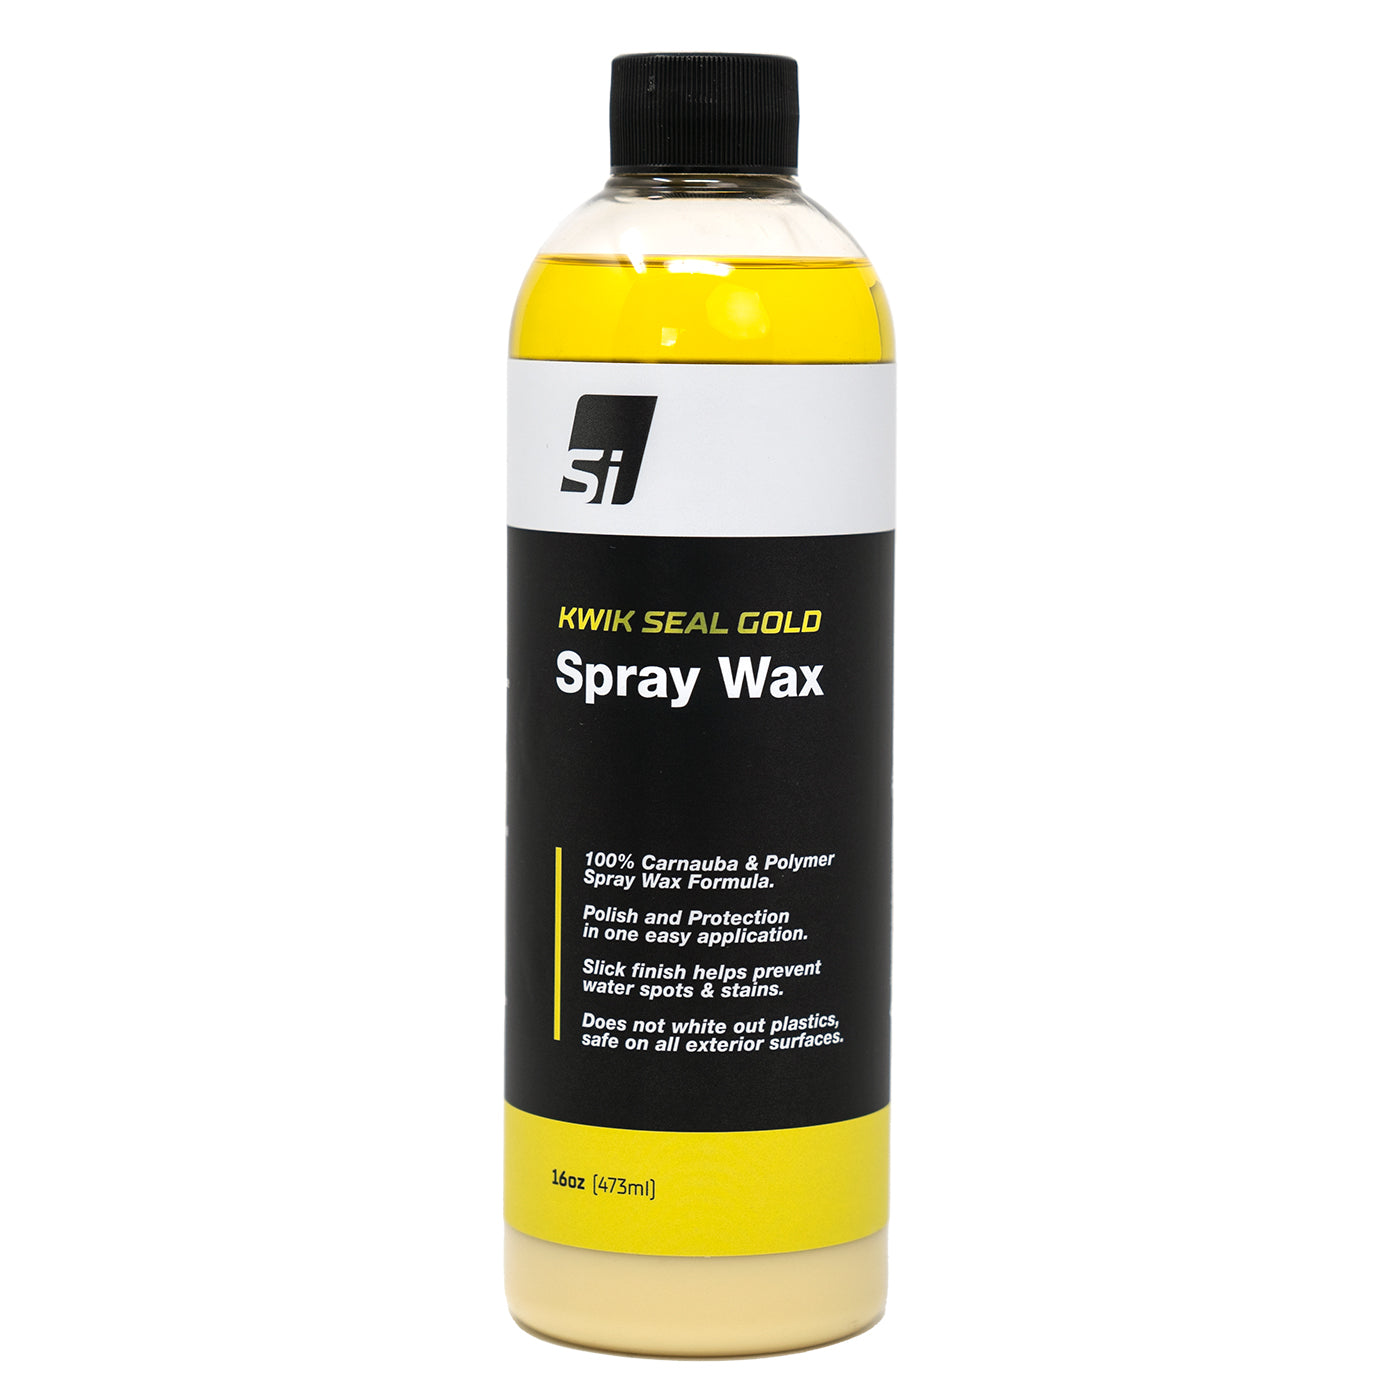 Kwik Seal Gold Spray Wax